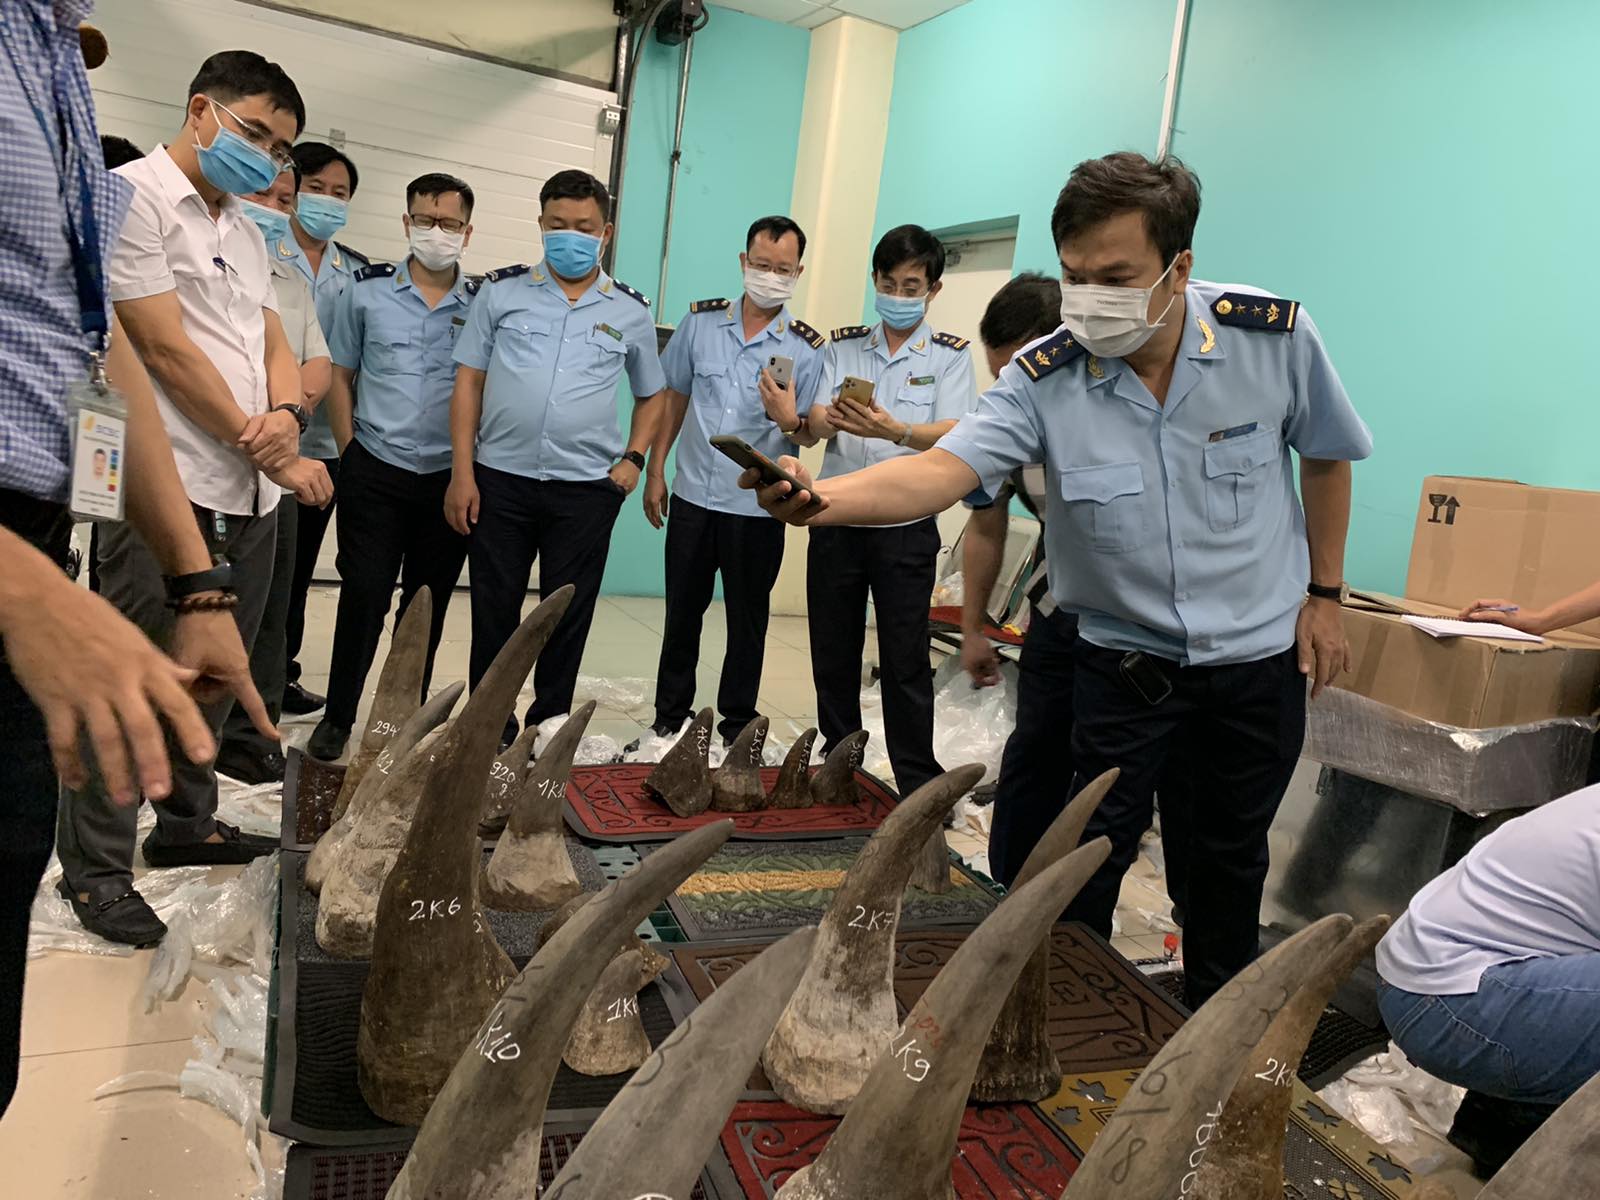 Hé lộ công ty đứng sau gần 100 kg nghi sừng tê giác ở khu vực sân bay Tân Sơn Nhất - Ảnh 2.